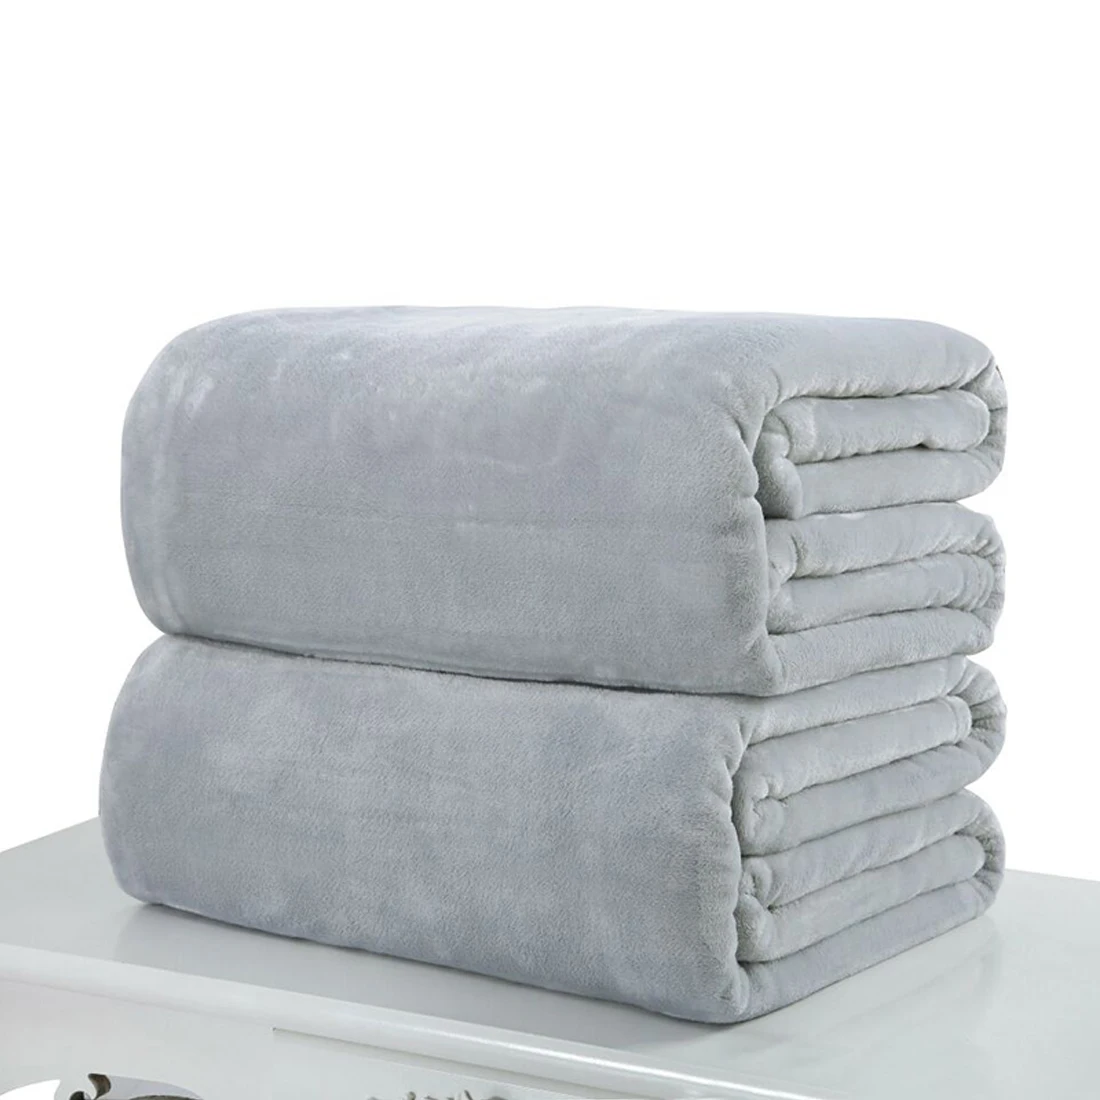 Высокое качество, супер мягкое Фланелевое простое покрывало, одеяло, Флисовое одеяло Manta Coberto для дивана, кровати, автомобиля, офиса - Цвет: silver gray